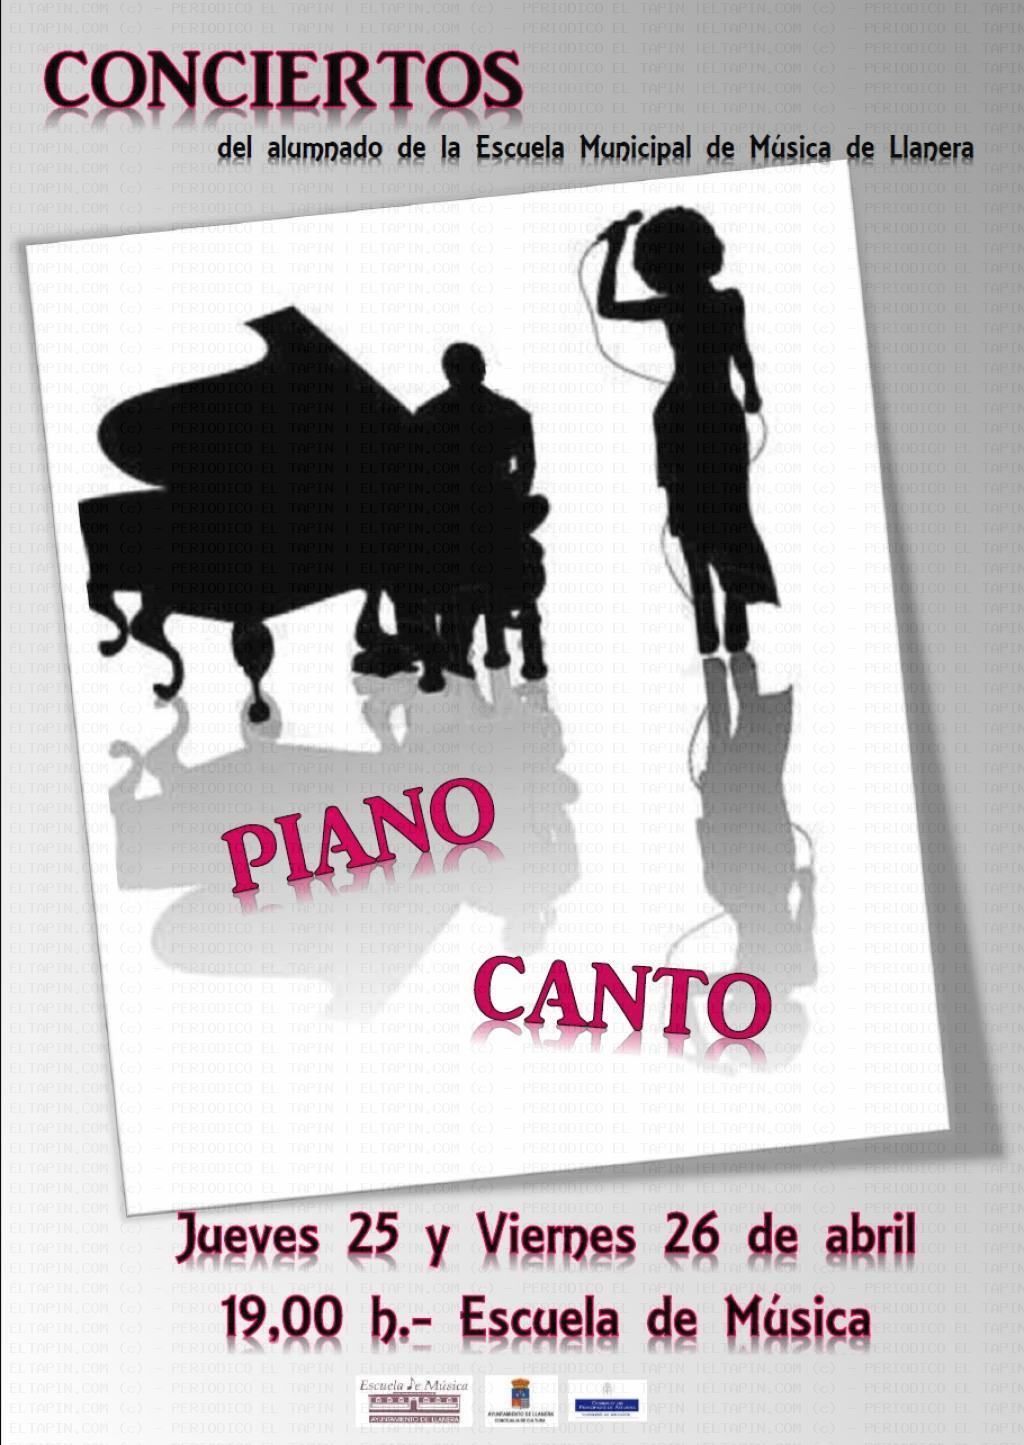 El Tapin - Conciertos de piano y canto del alumnado de la Escuela Municipal de Música de Llanera